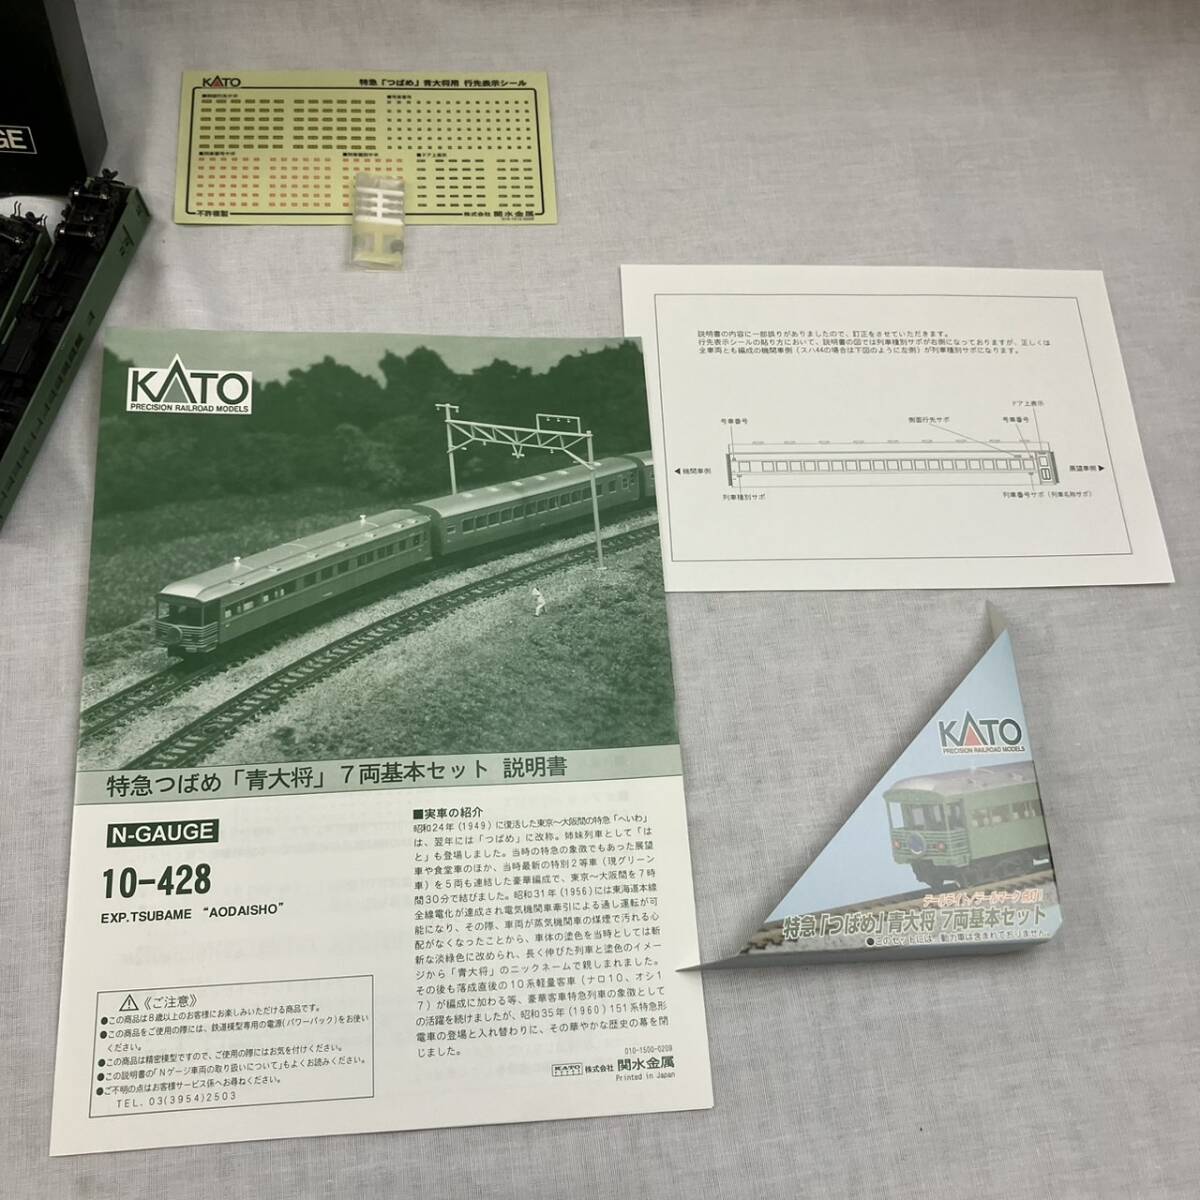 [5-158] railroad model KATO 10-428 Special sudden ... Blue General N GAUGE 7 both basic set 